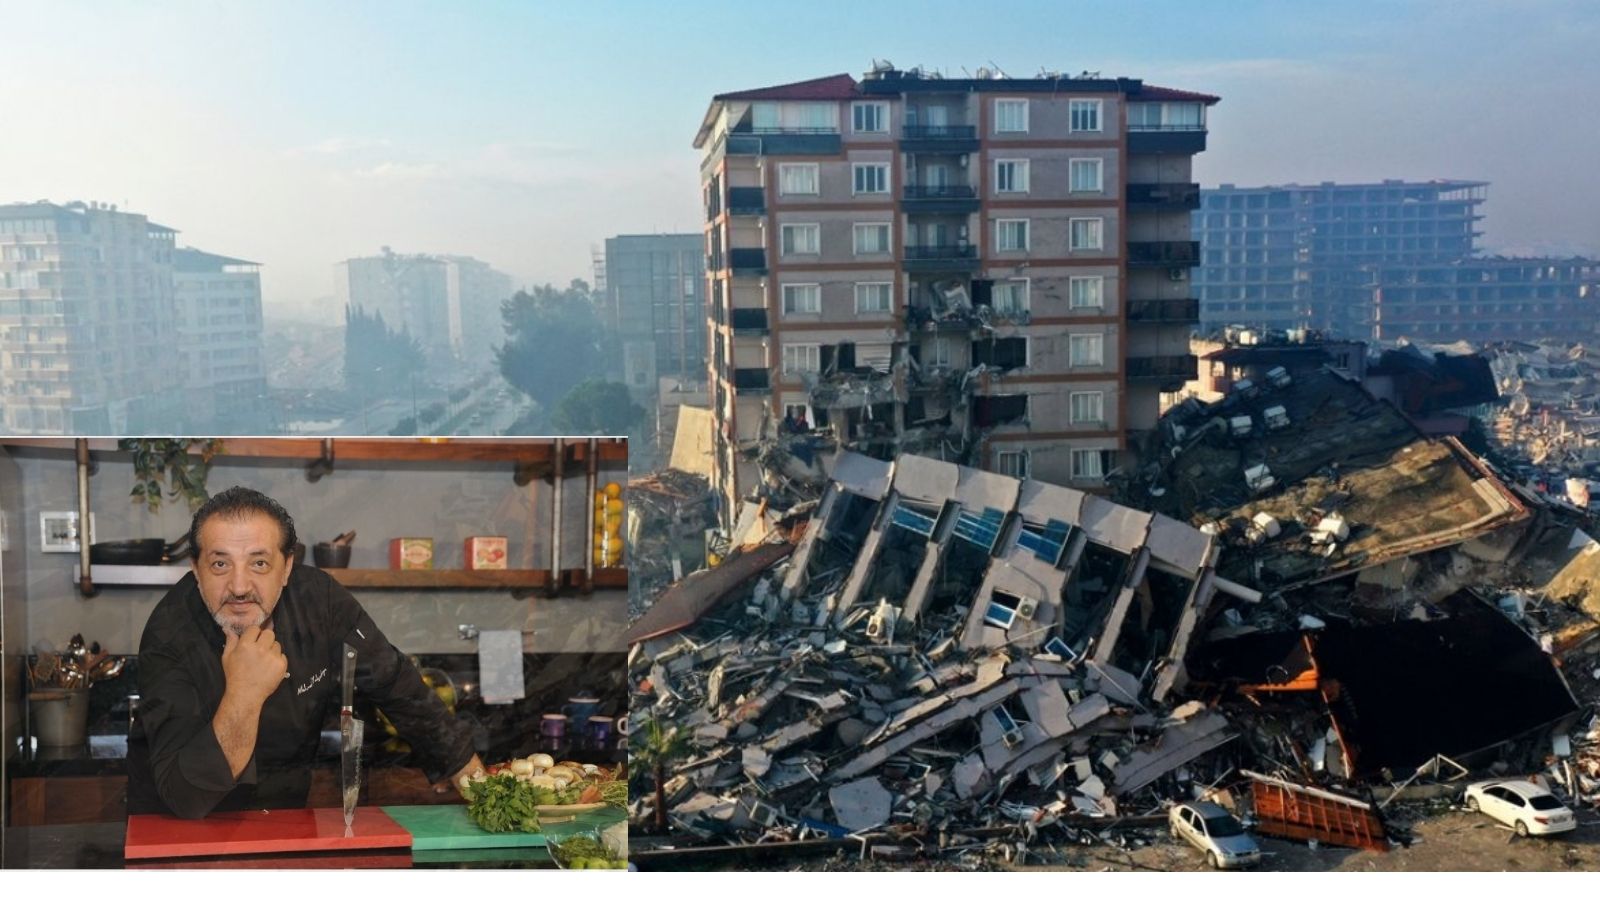 Kahramanmaraş'ta 6 Şubat 2023'te meydana gelen asrın felaketi olarak adlandırılan “deprem felaketi” sonrası 32 gün boyunca afet bölgesinde kalan Mehmet Yalçınkaya, katıldığı bir programda o acı günlere dair duygularını konuştu.